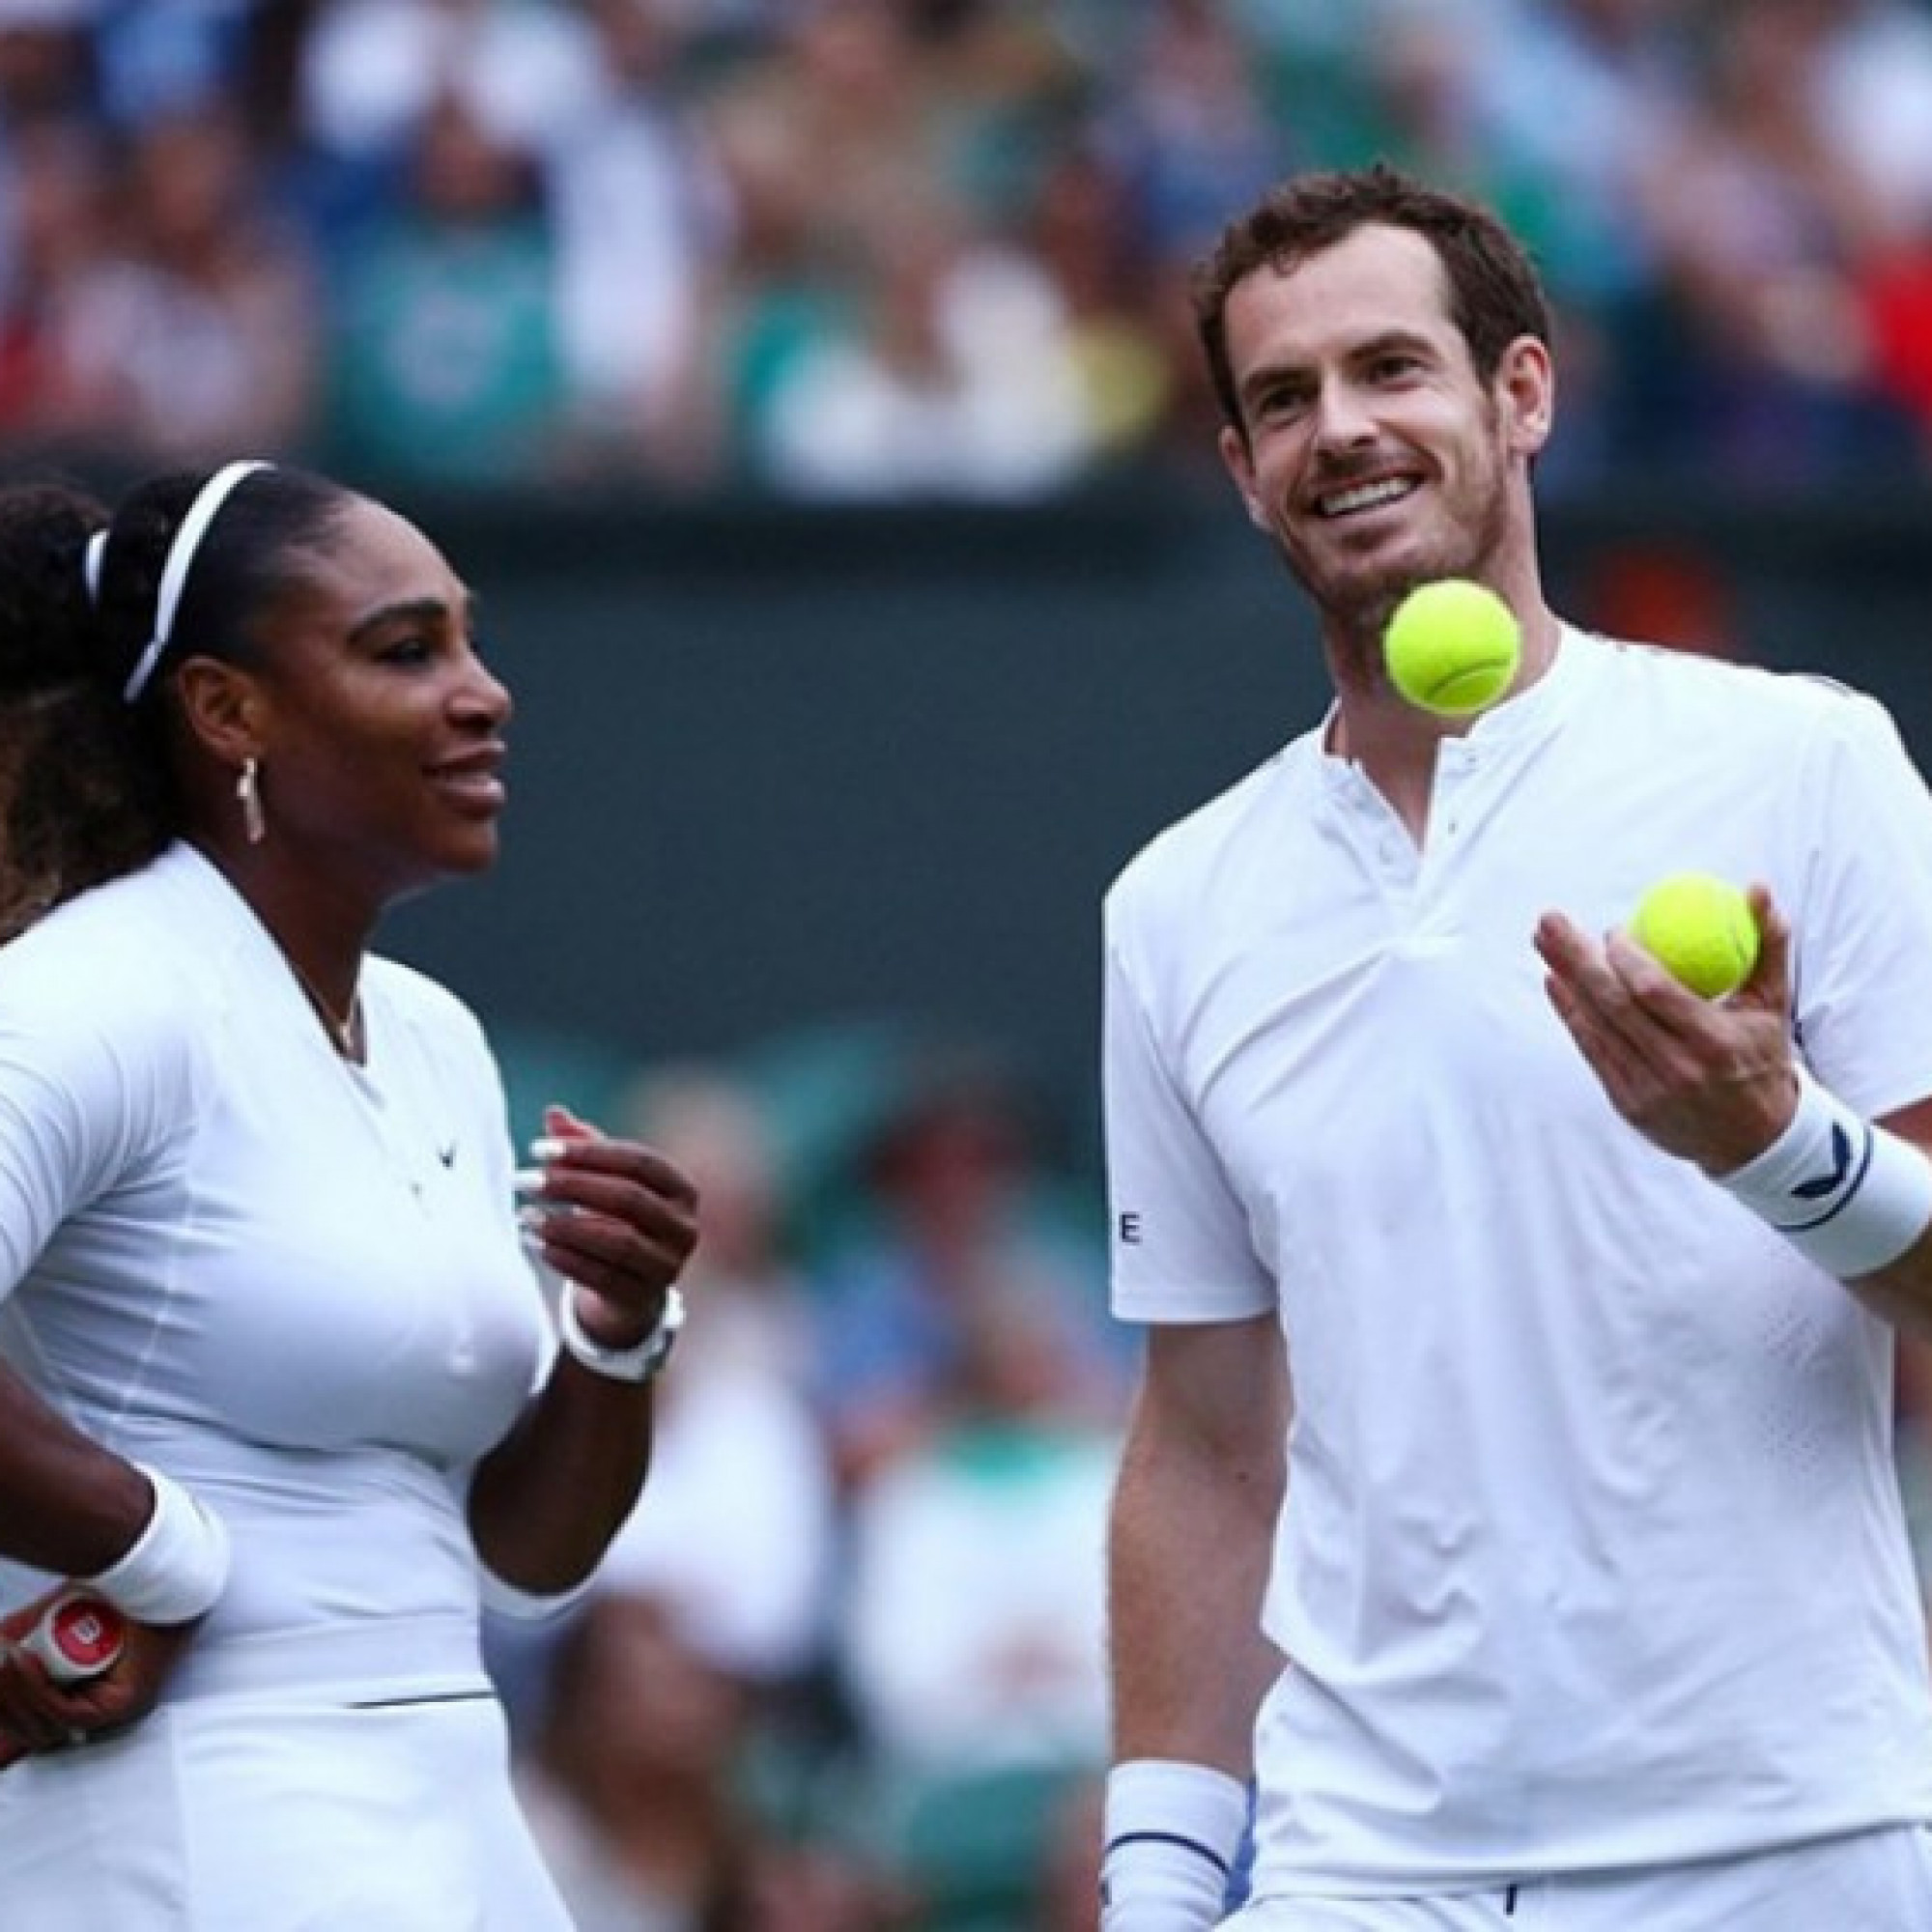  - Nóng nhất thể thao tối 6/7: Serena Williams tri ân Murray